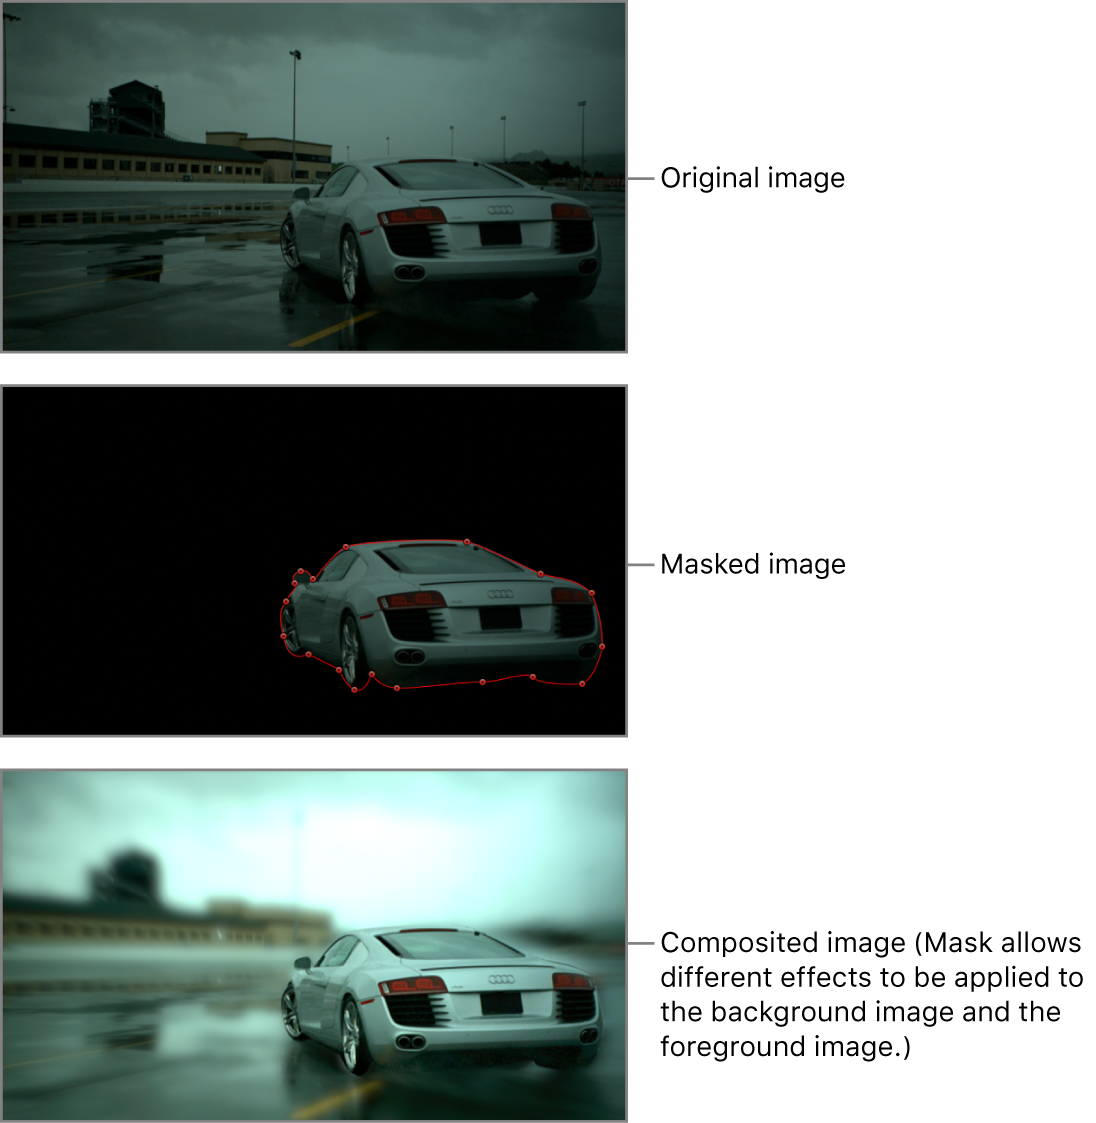 显示遮罩前的汽车图像、沿汽车周围绘制的遮罩以及最终的速动观察效果的画布（模糊滤镜影响背景但不影响汽车）